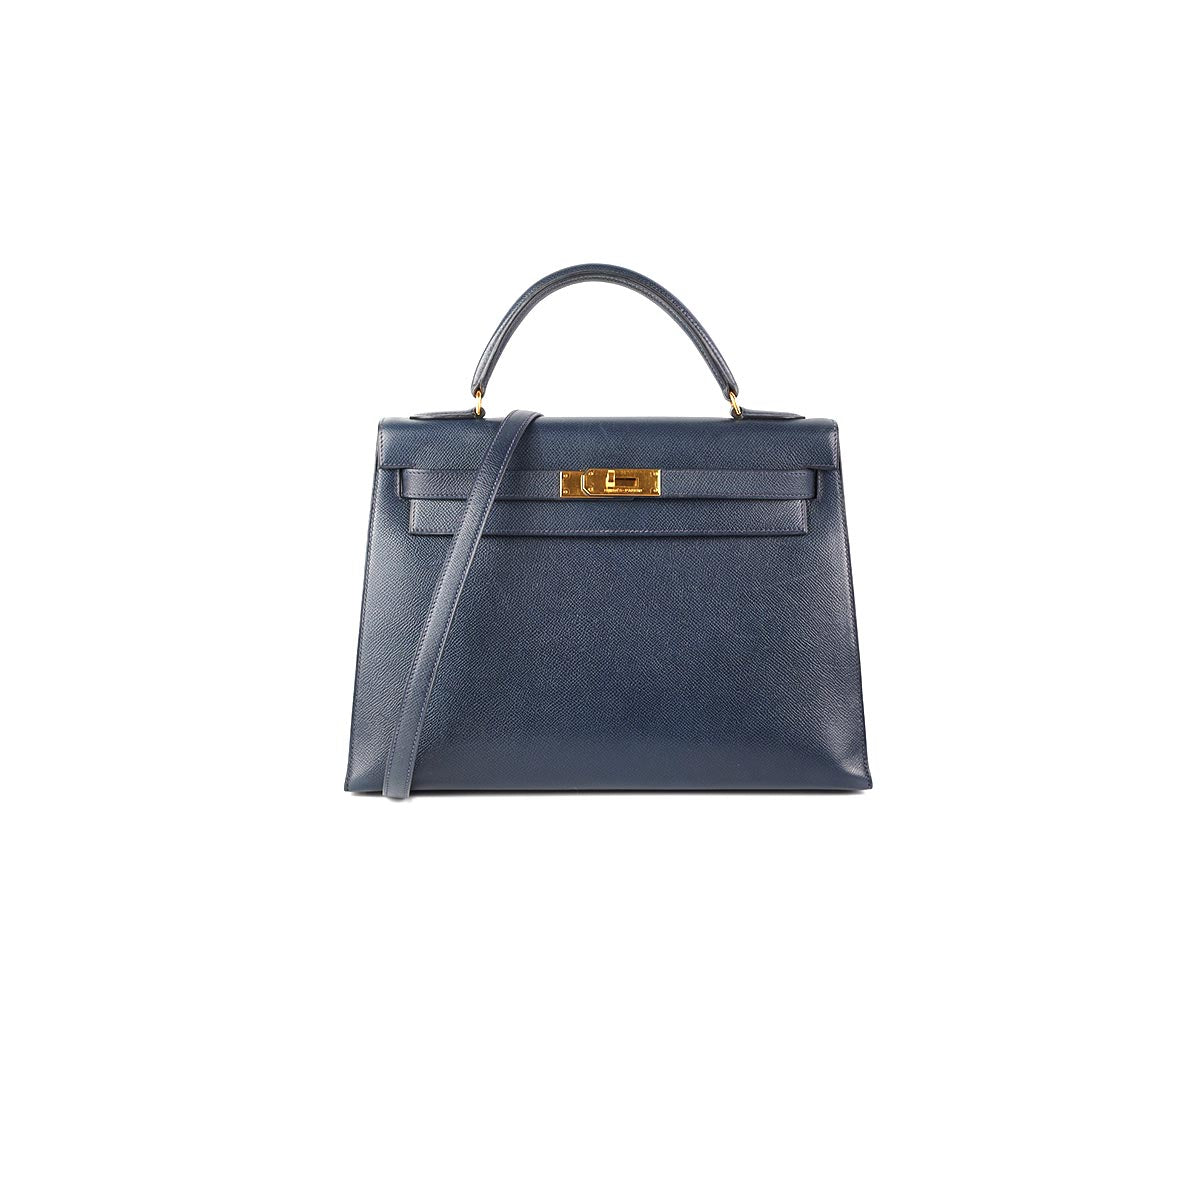 Hermes Kelly 32 Sellier, Bleu Nuit GHW, Epsom, Luxury, Bags